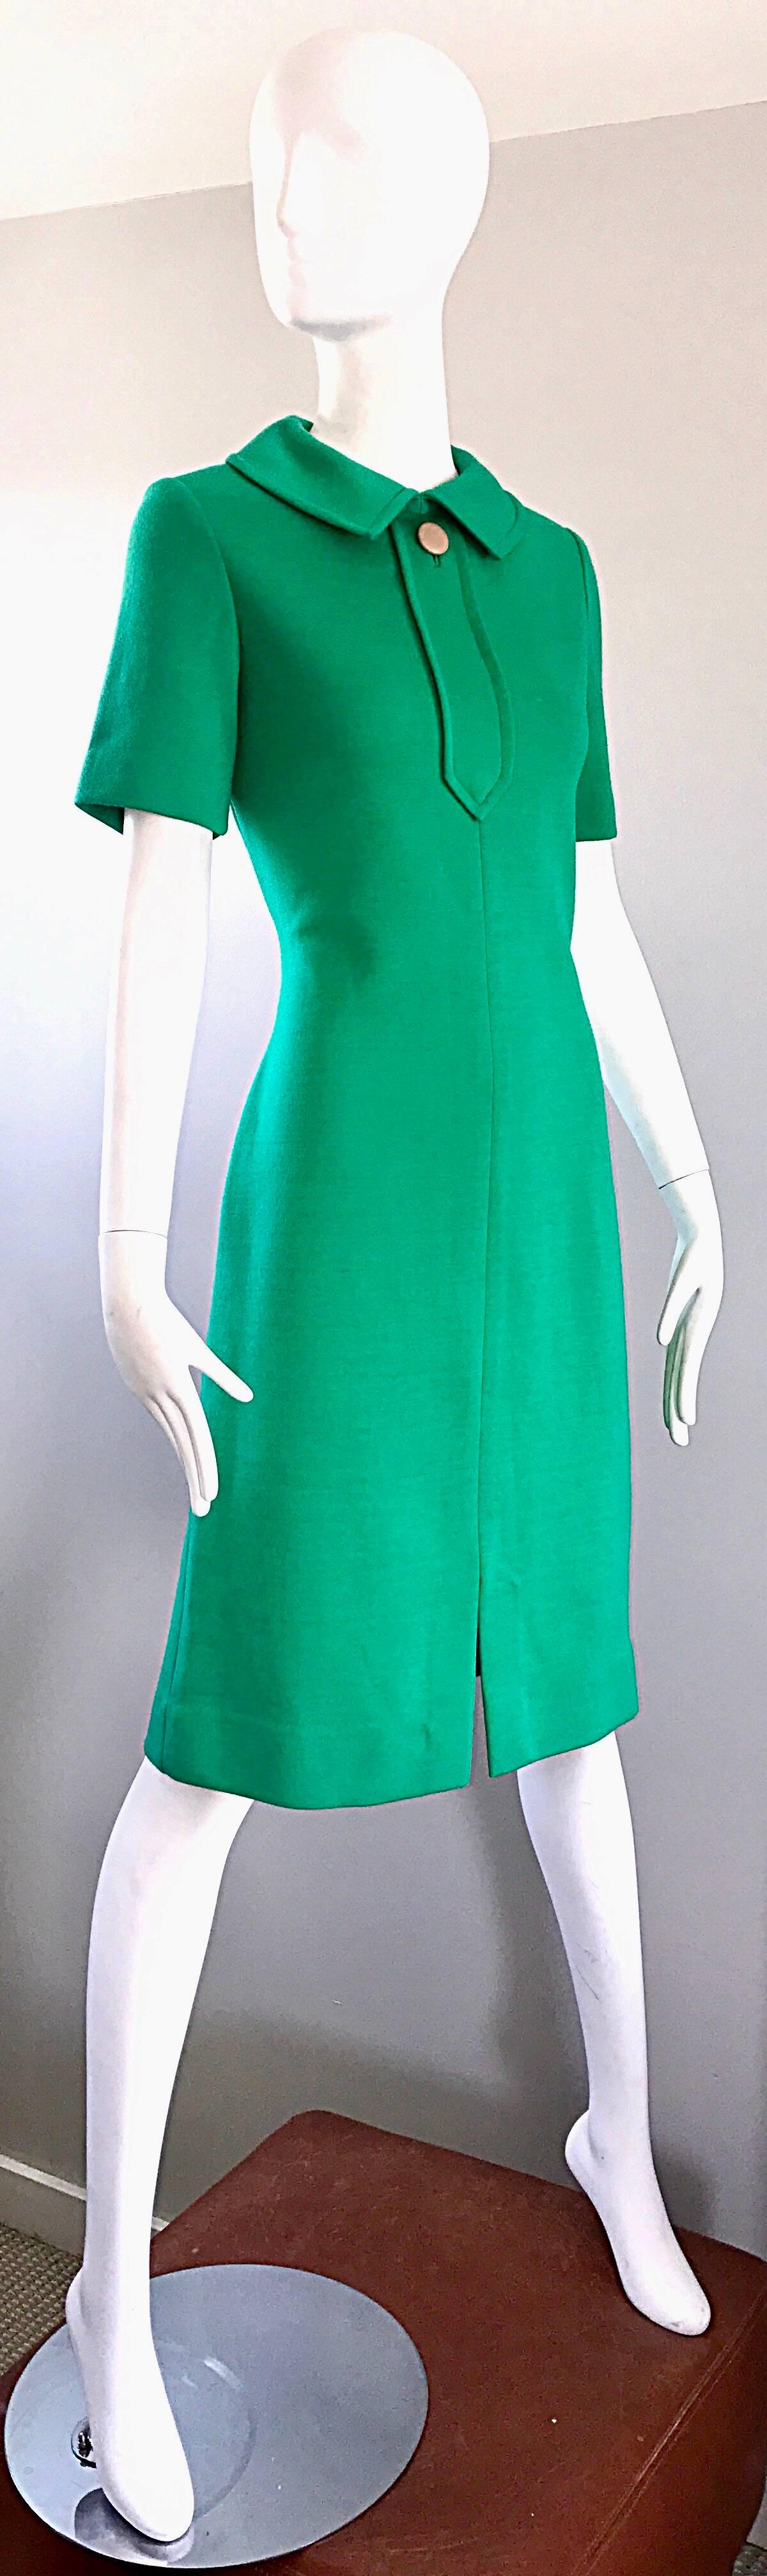 Women's 1960s Kelly Green Virgin Wool Knit 60s Vintage Mod Short Sleeve Shift Dress  For Sale